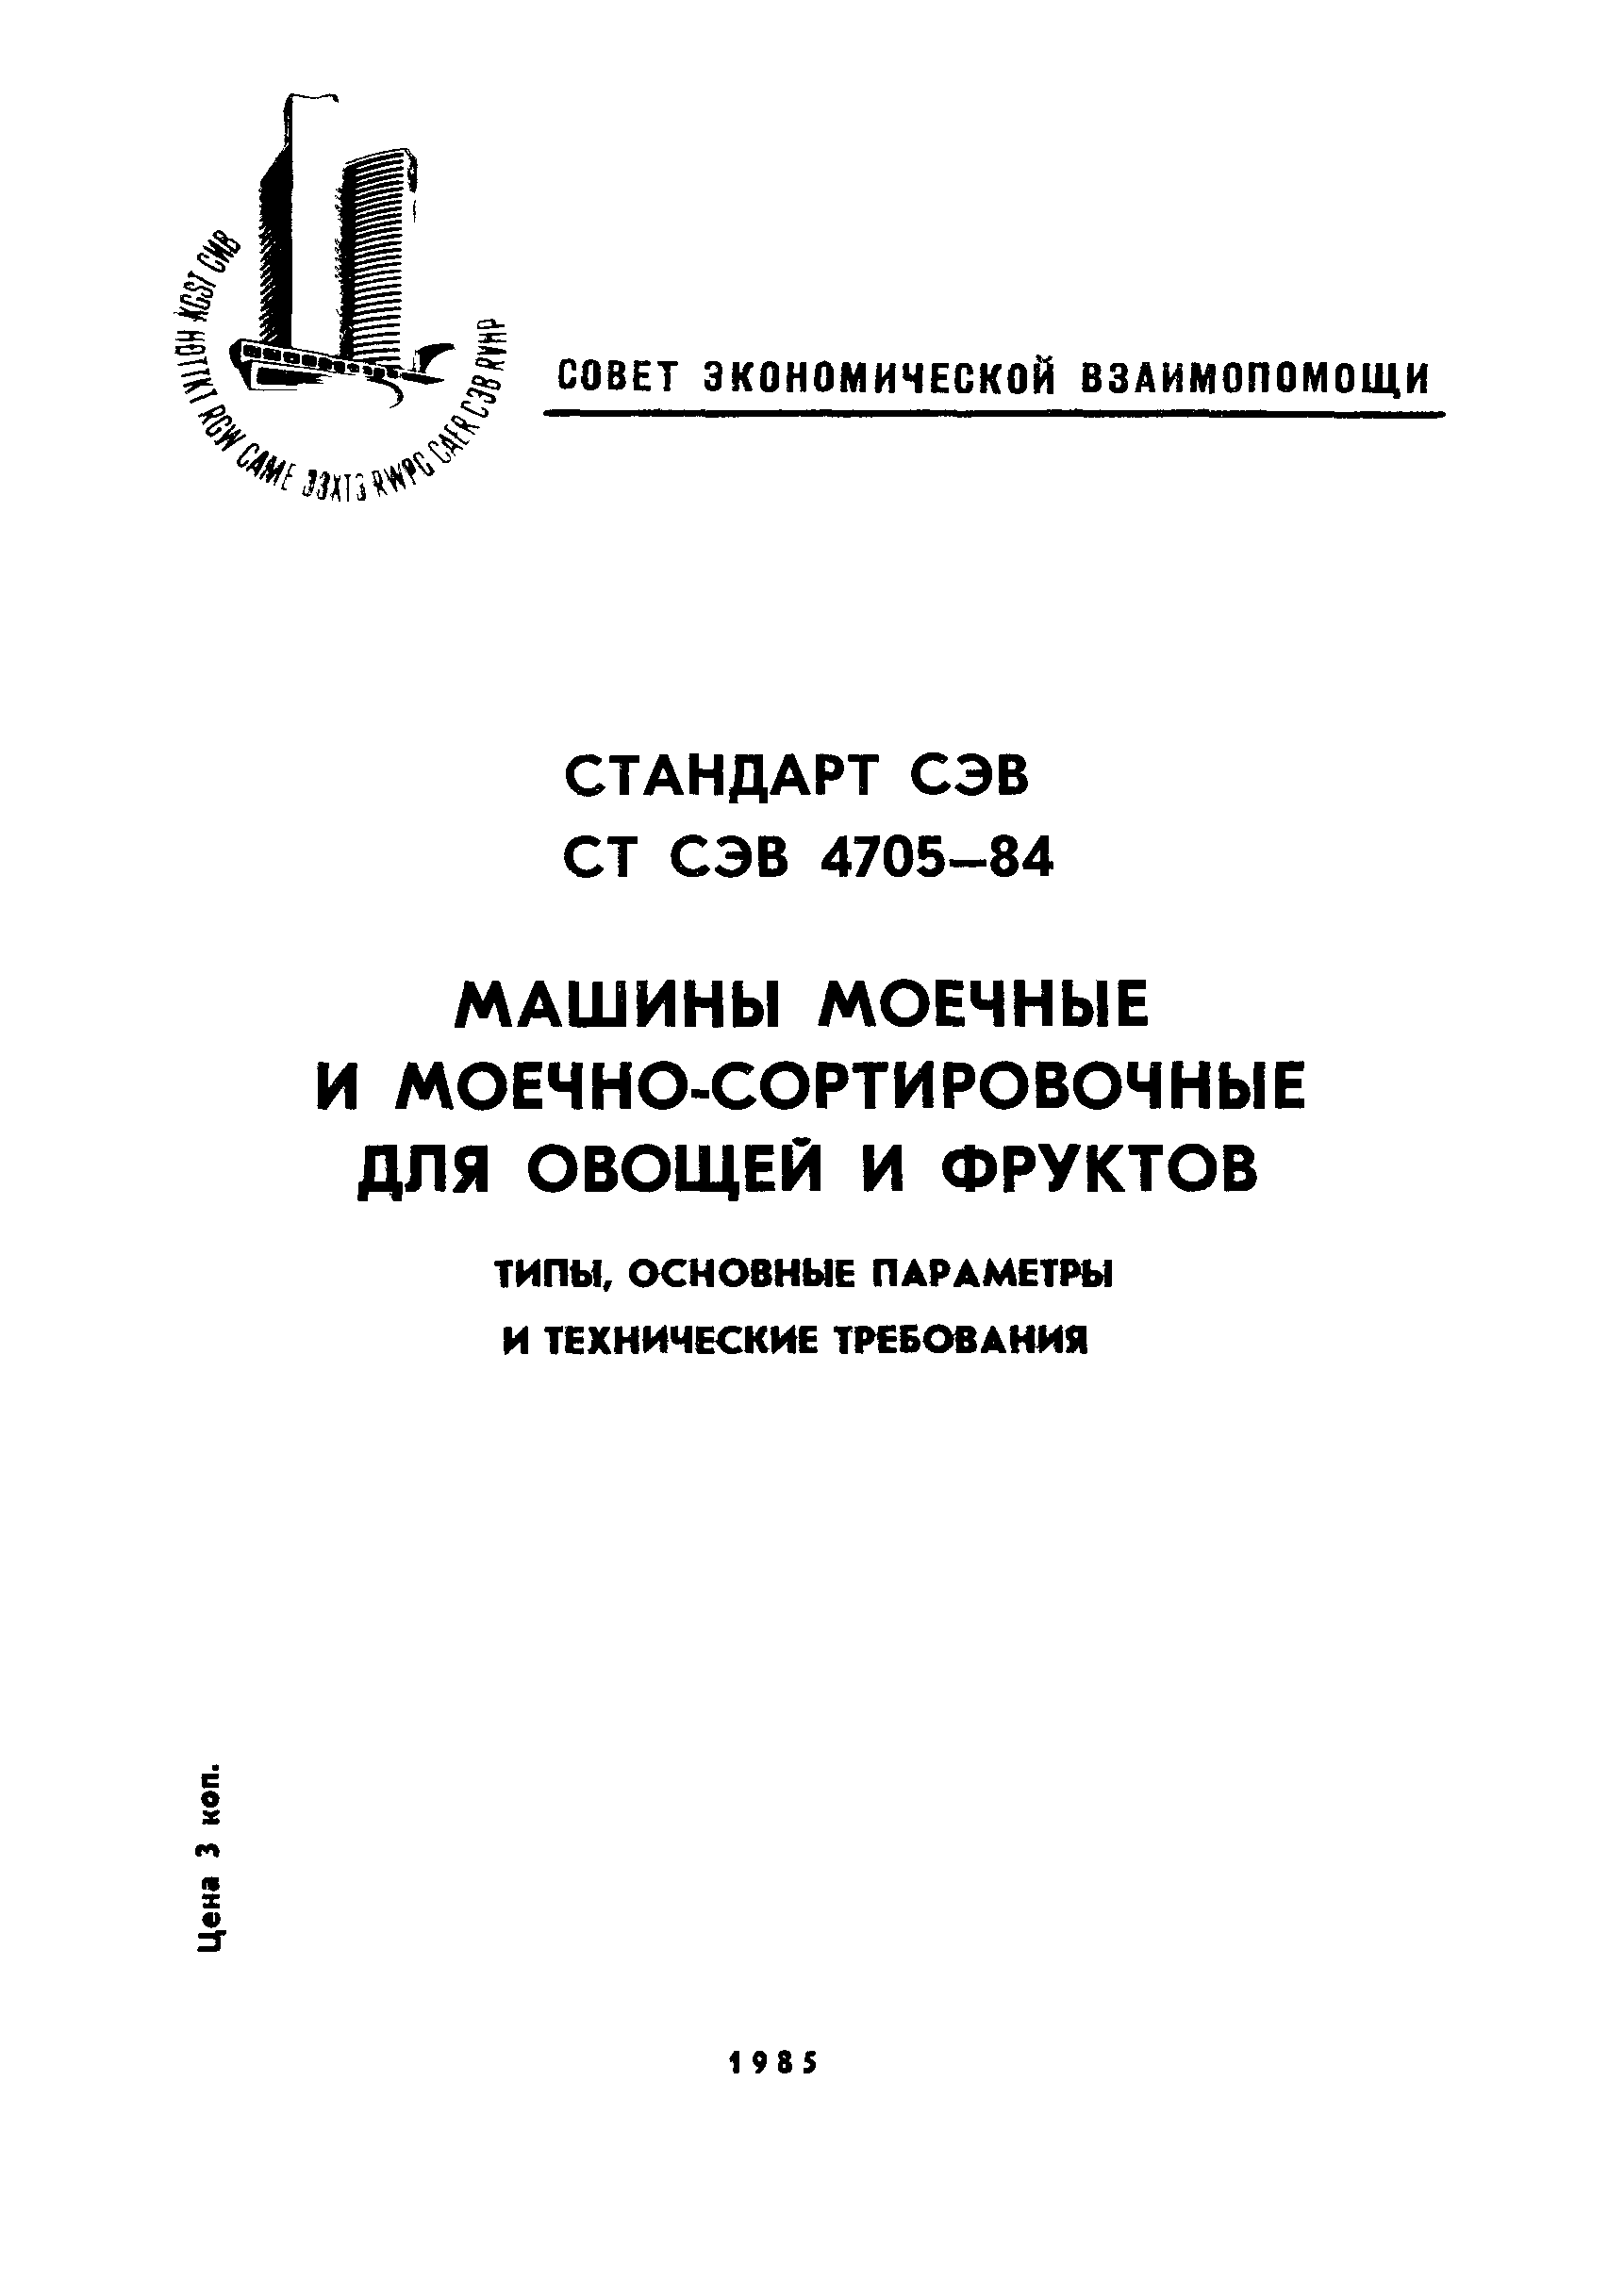 СТ СЭВ 4705-84